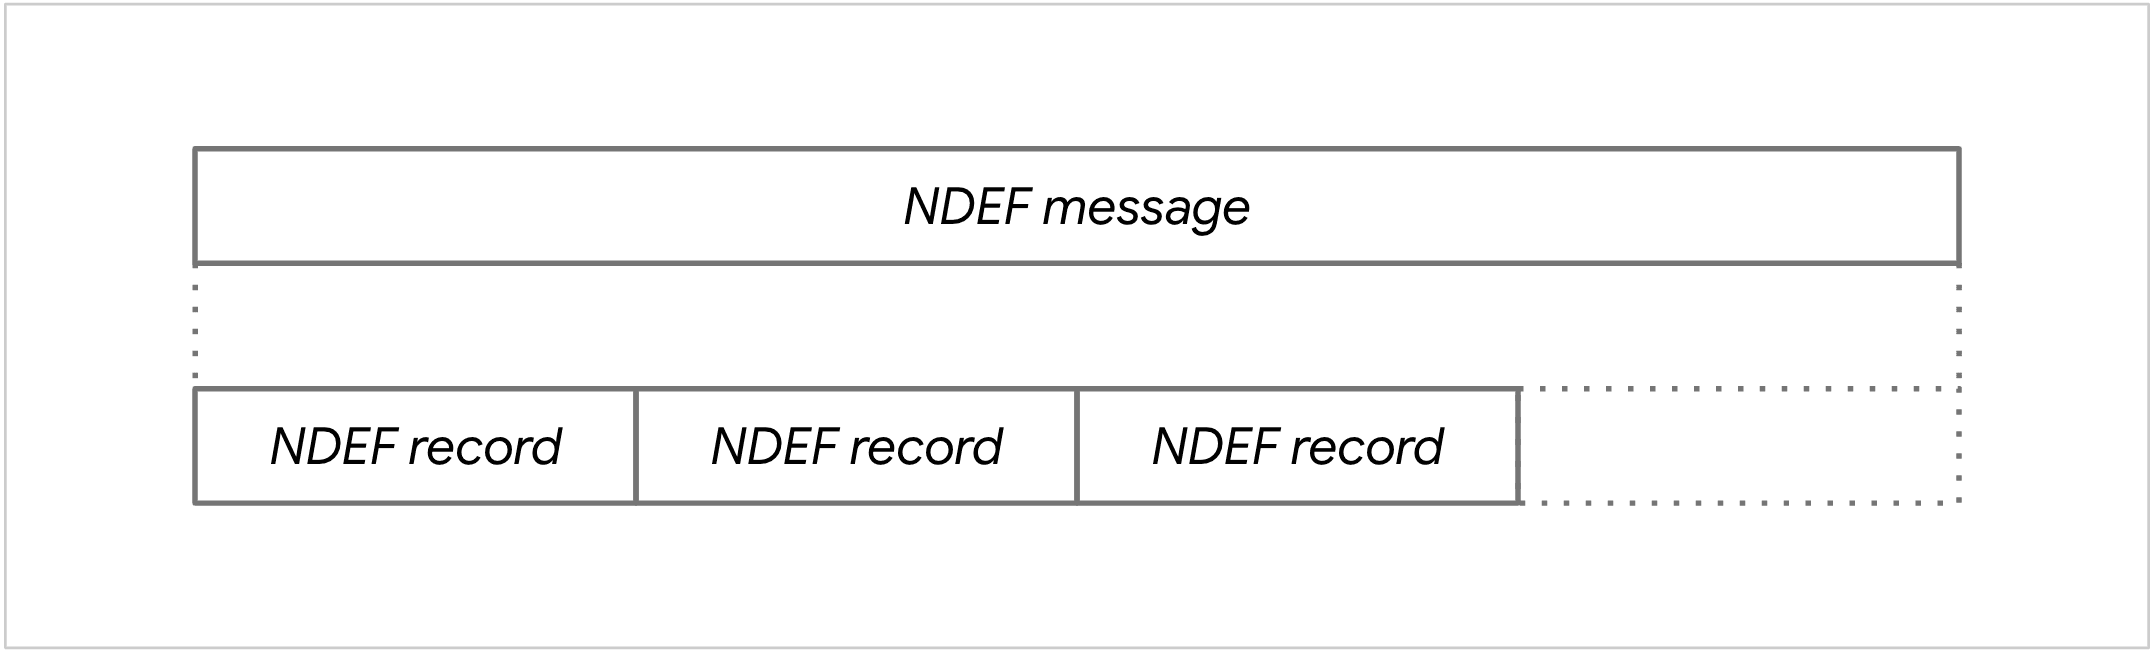 Schemat wiadomości NDEF